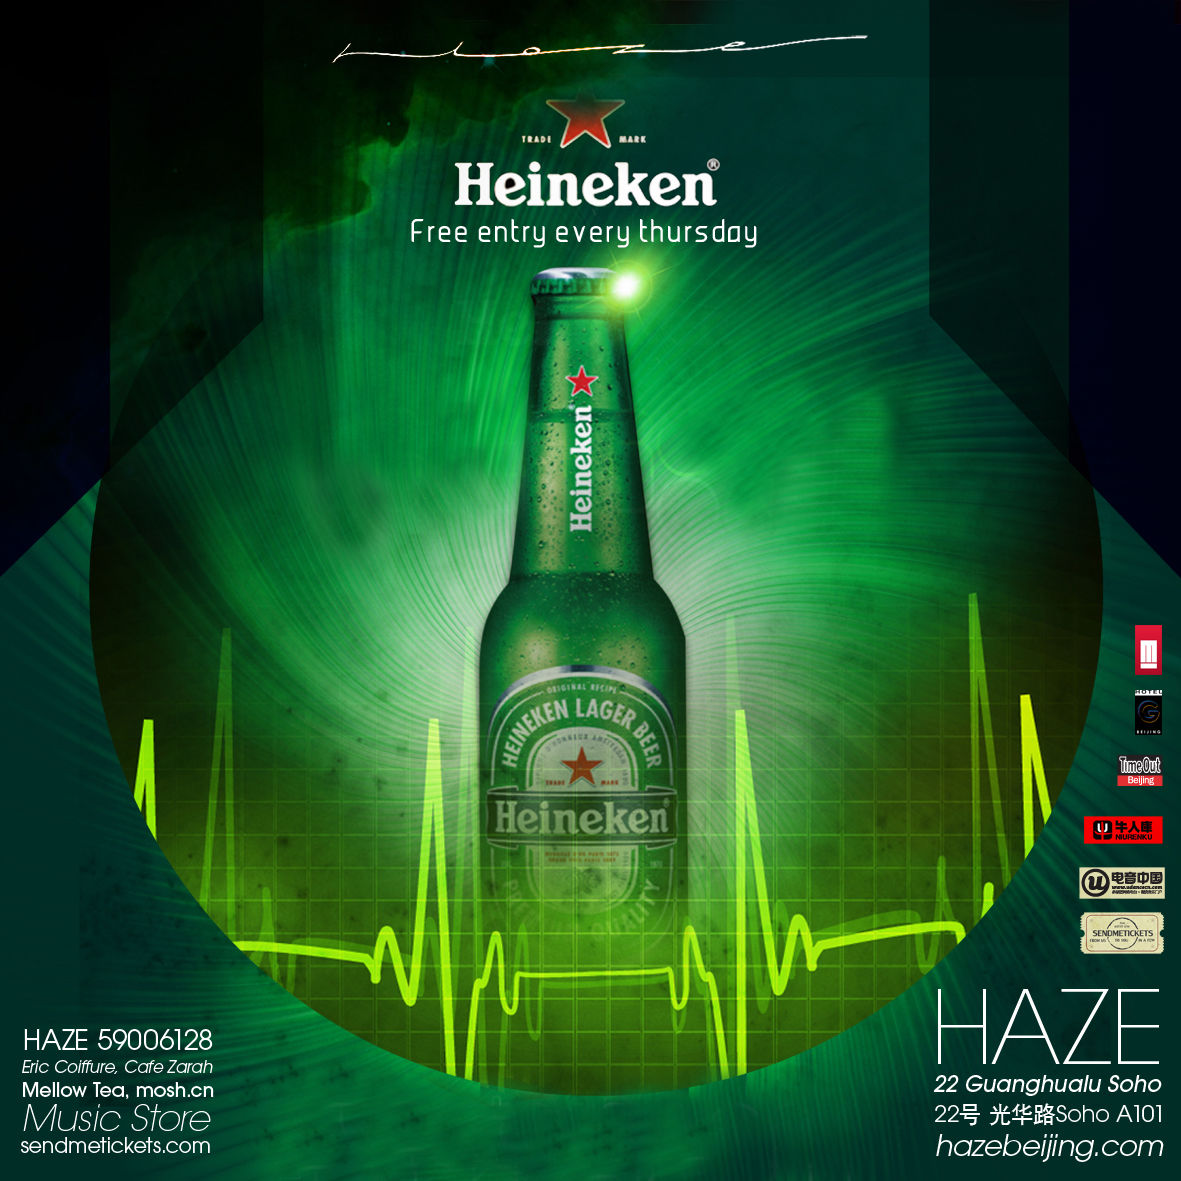 Heineken N.V.